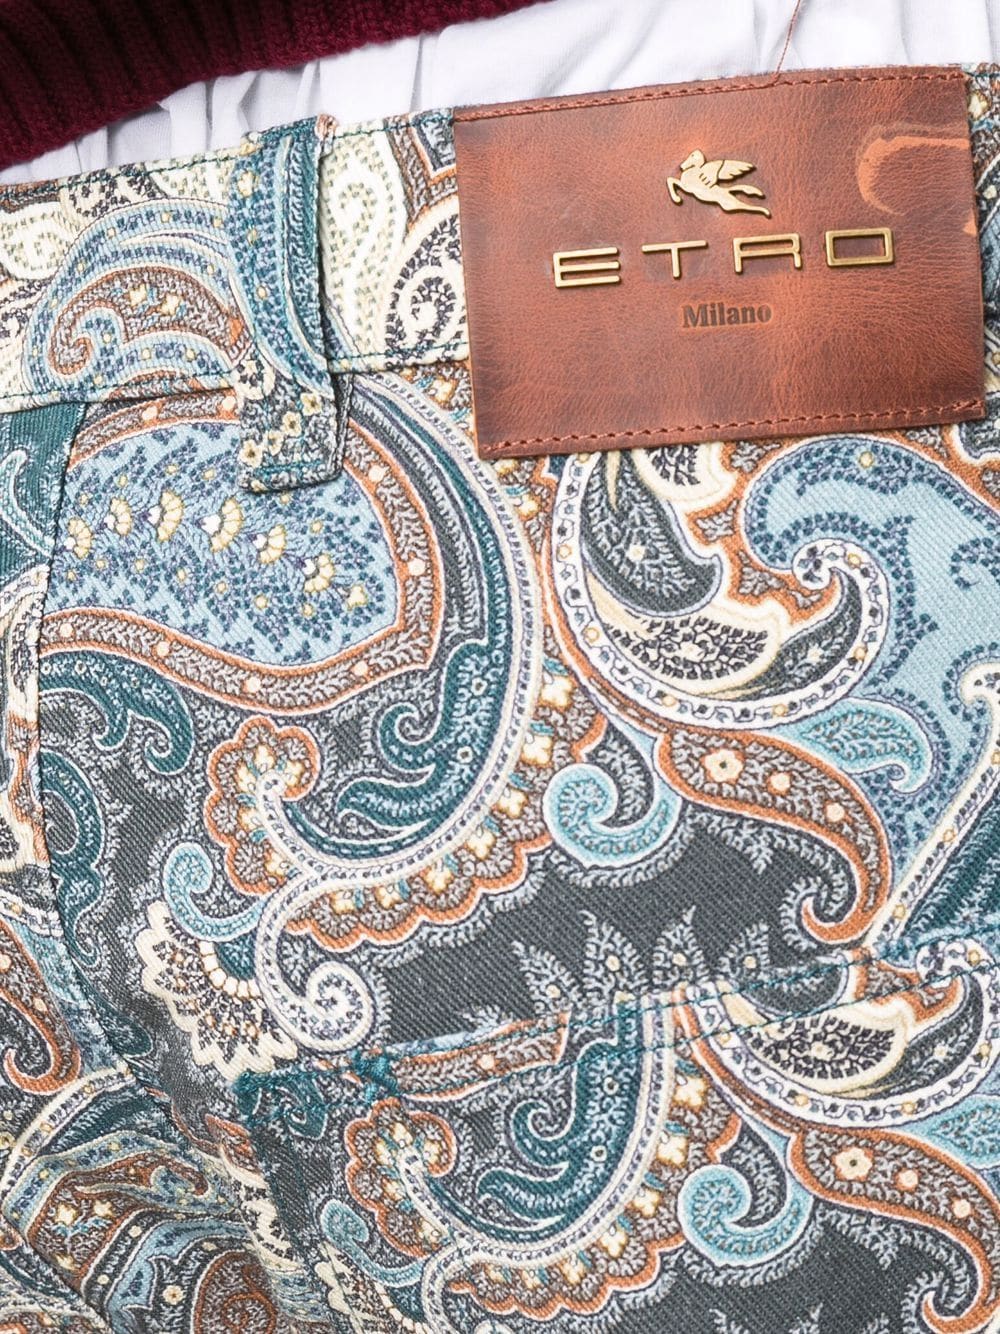 фото Etro прямые джинсы с принтом пейсли